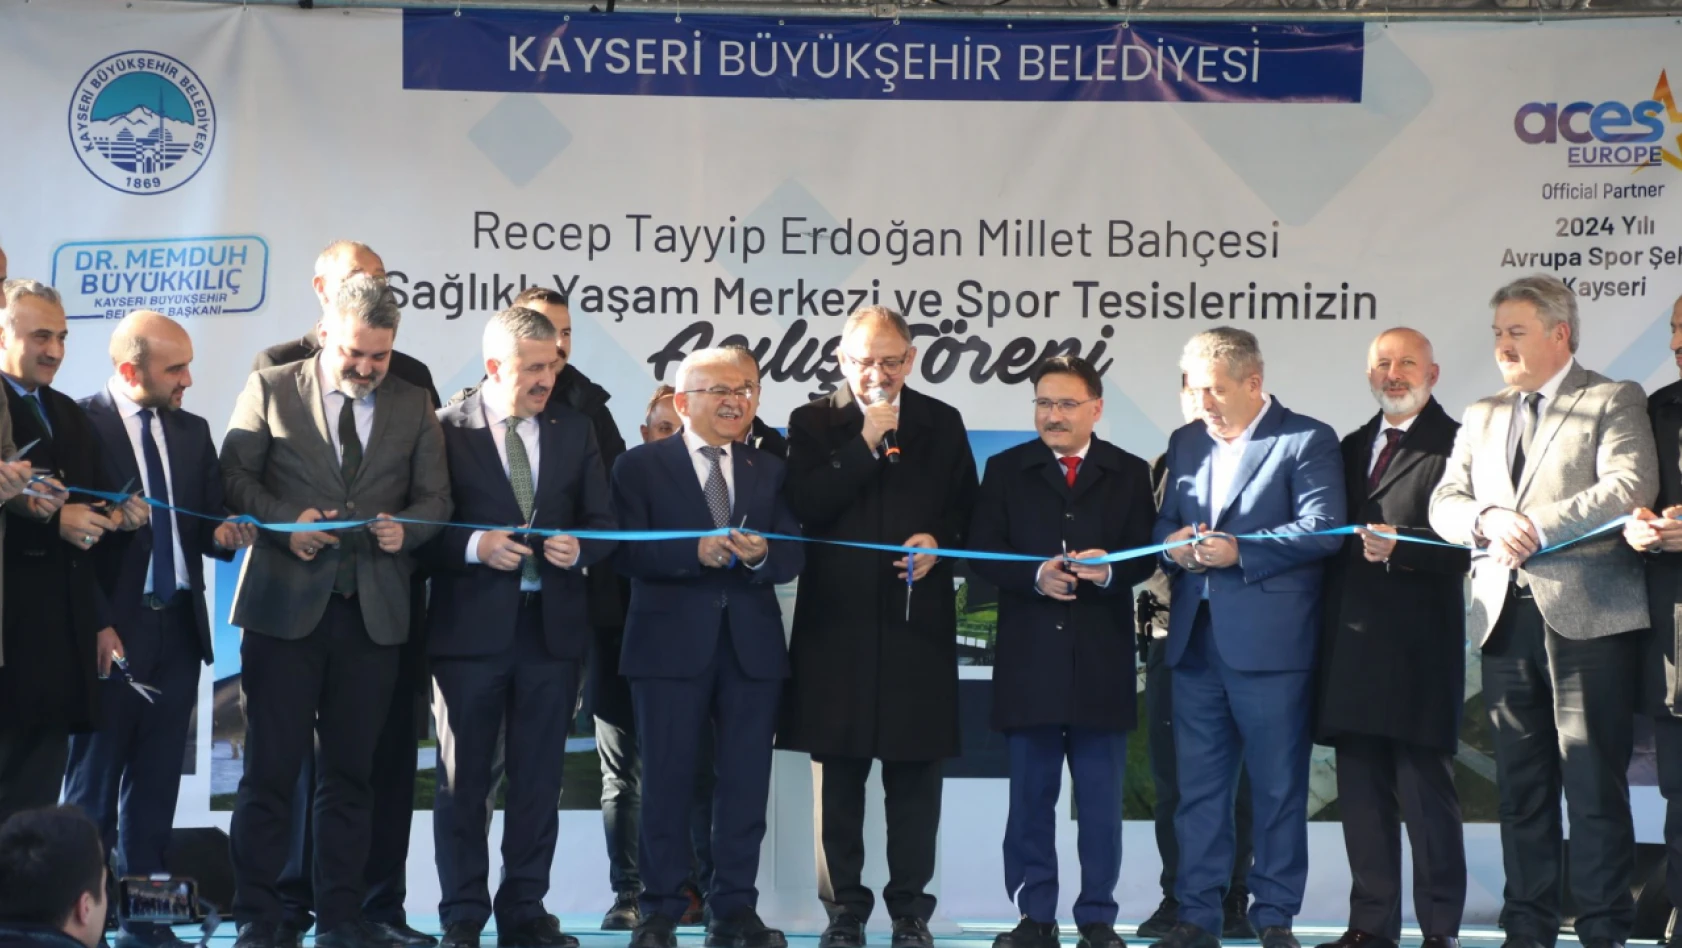 Özhaseki, Cumhurbaşkanı Erdoğan'ın Kayseri'ye geleceğini duyurdu